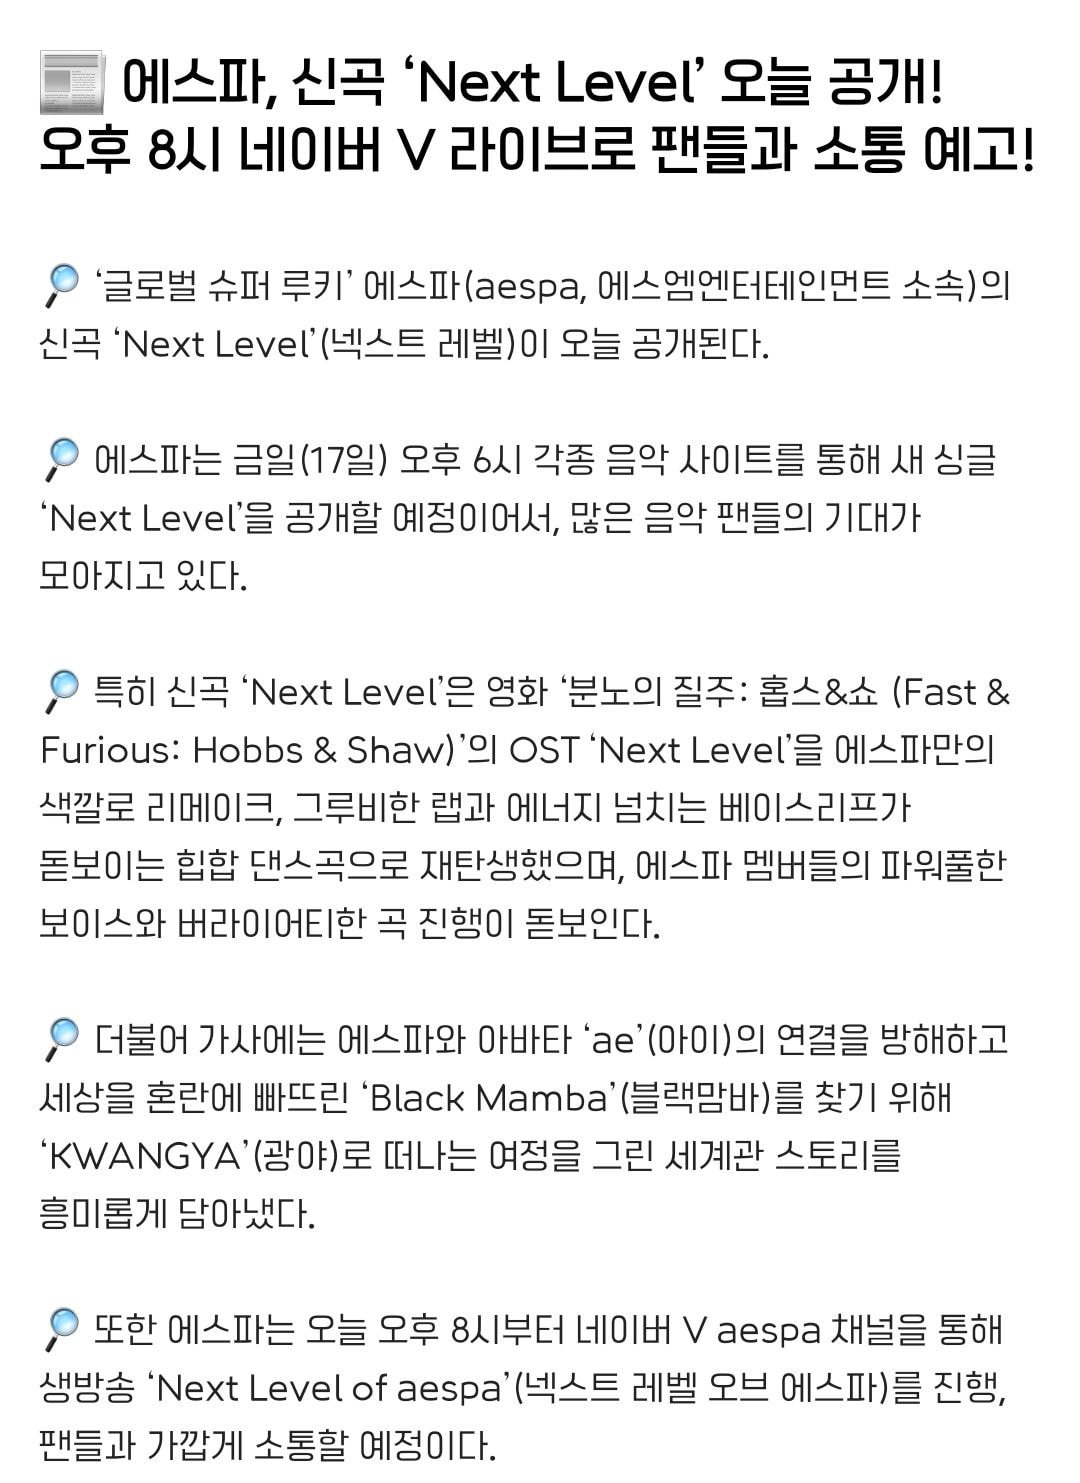 에스파 컴백 신곡 '리메이크'라고 공식 기사 뜸